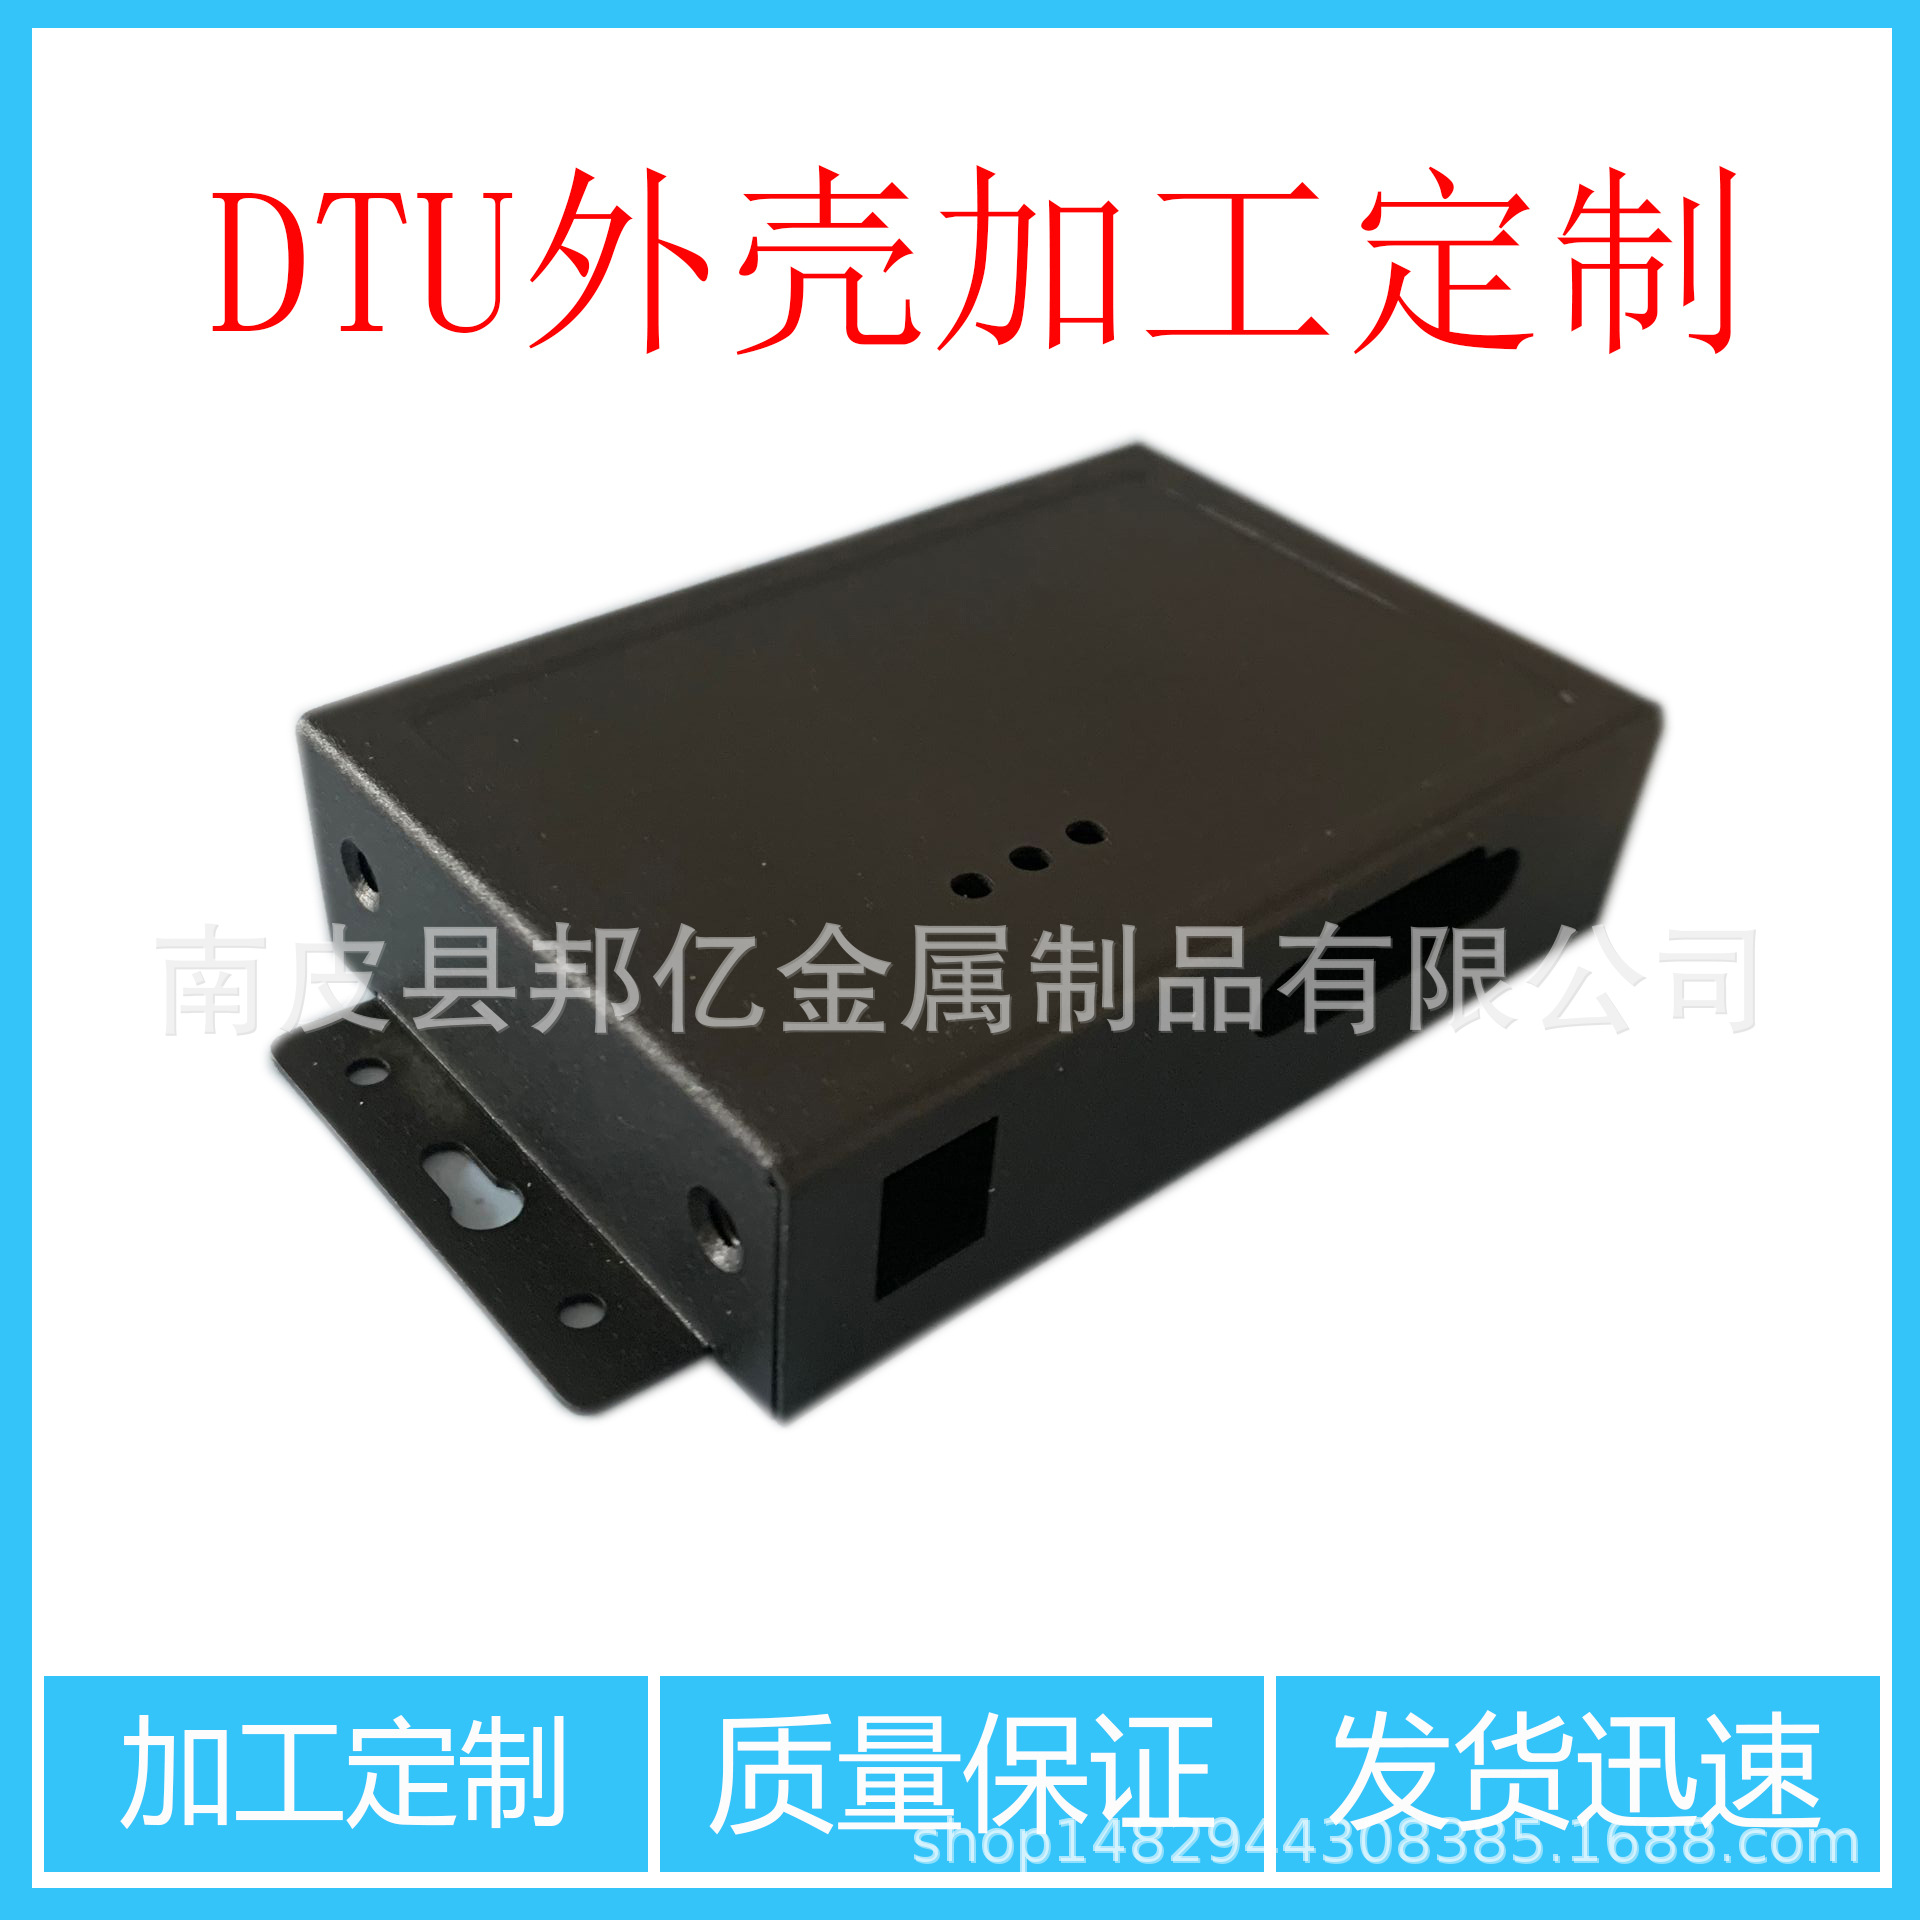 生产DTU外壳 GPRS模块 GSM CDMA通讯模块外壳 钣金加工厂家